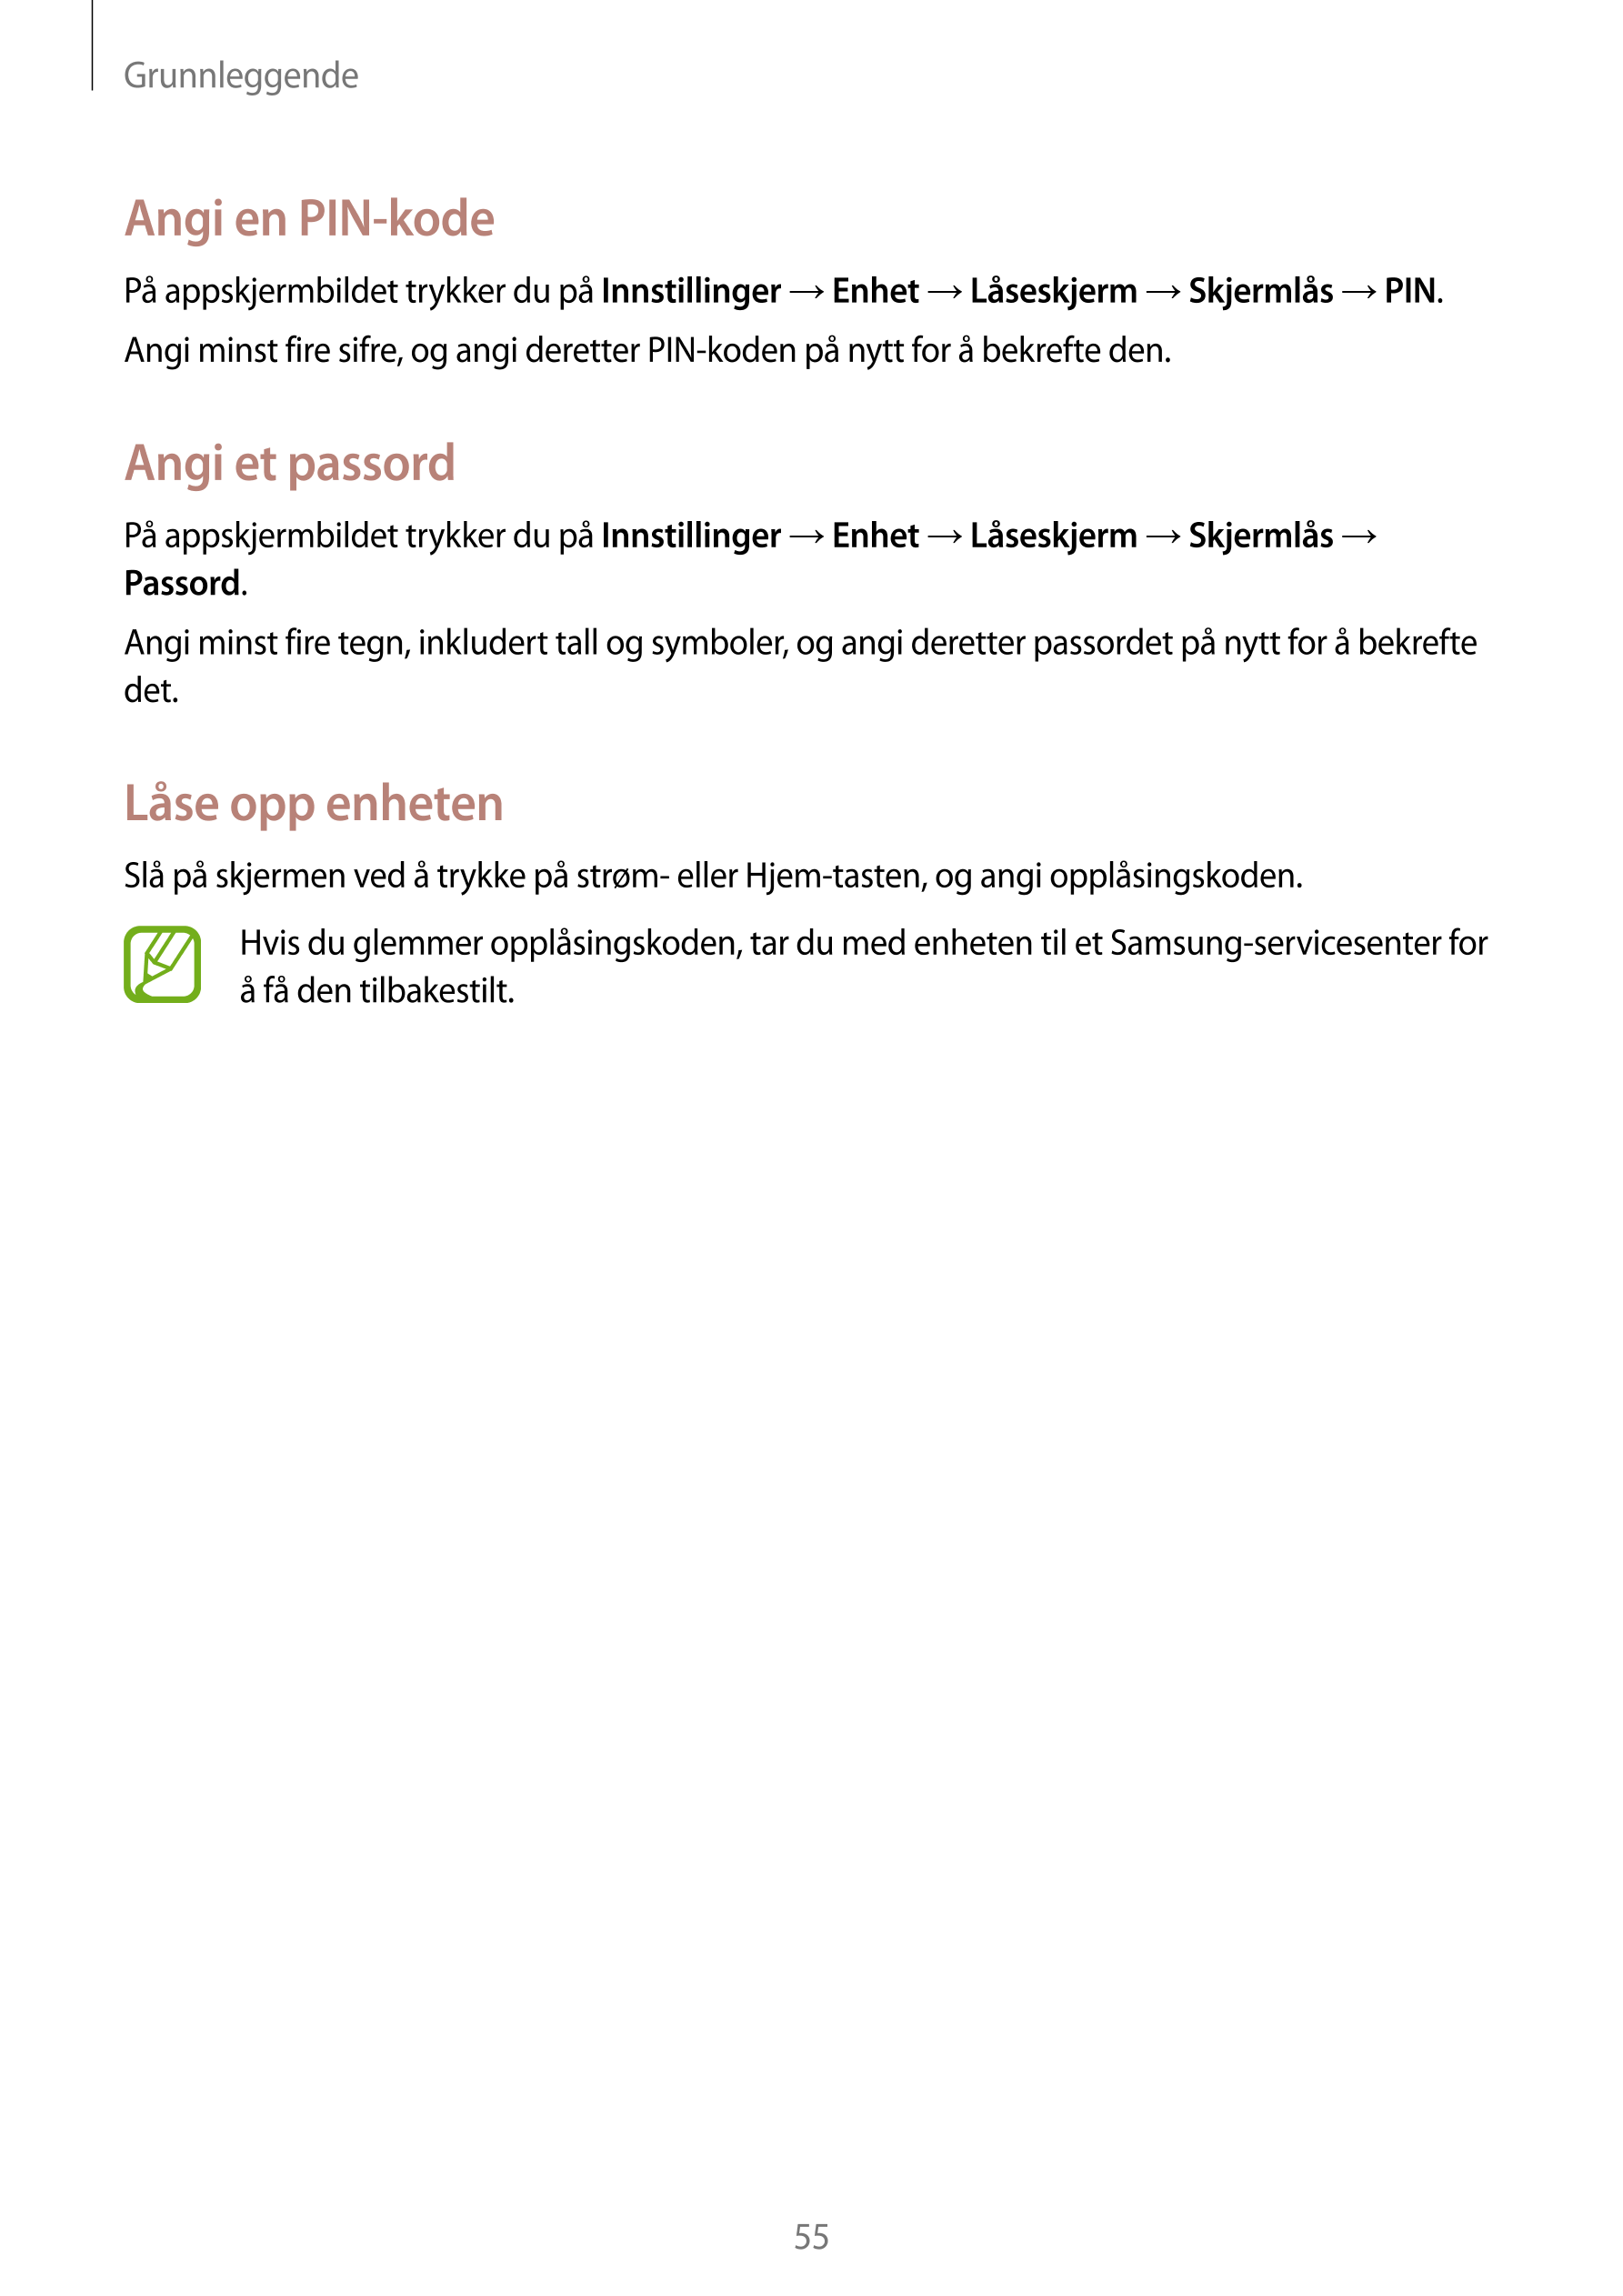 Grunnleggende
Angi en PIN-kode
På appskjermbildet trykker du på  Innstillinger  →  Enhet  →  Låseskjerm  →  Skjermlås  →  PIN.
A